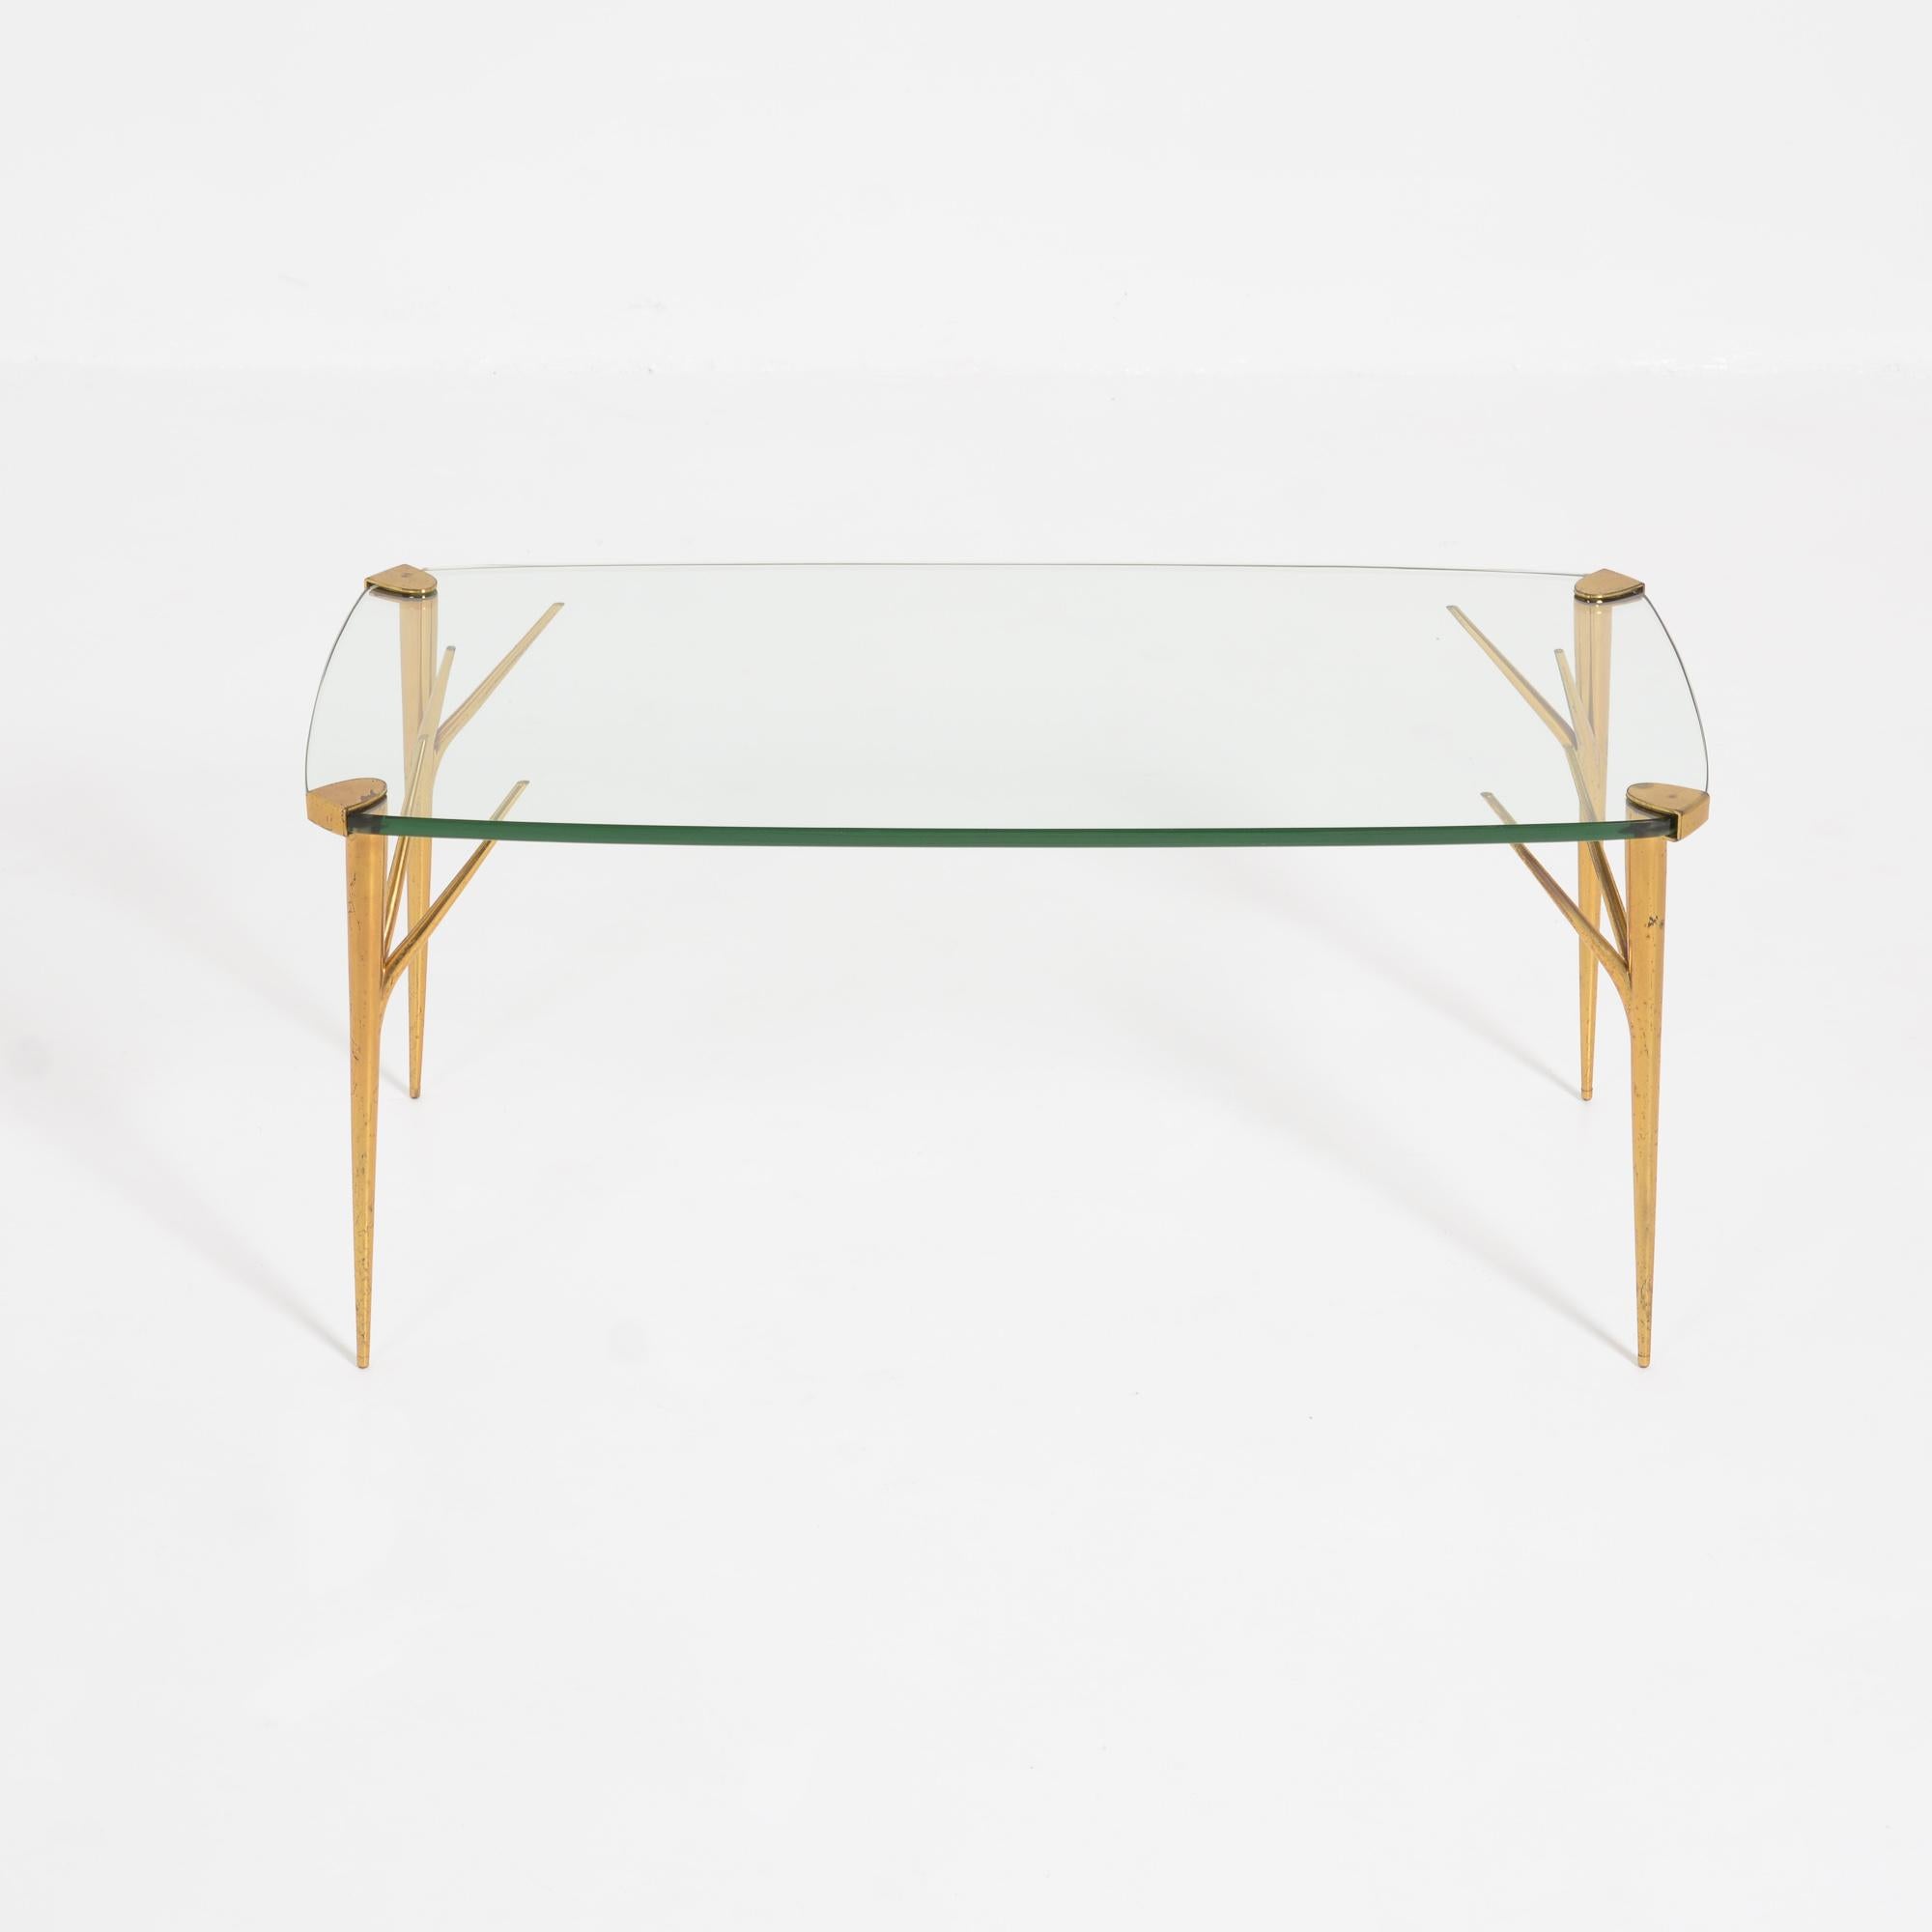 Cette belle table basse a été conçue par Max Ingrand et fabriquée par Fontana Arte en 1956.
Les élégants pieds en laiton soutiennent le plateau rectangulaire en verre de cristal.
Cette table est en bon état d'authenticité, le plateau en verre a un